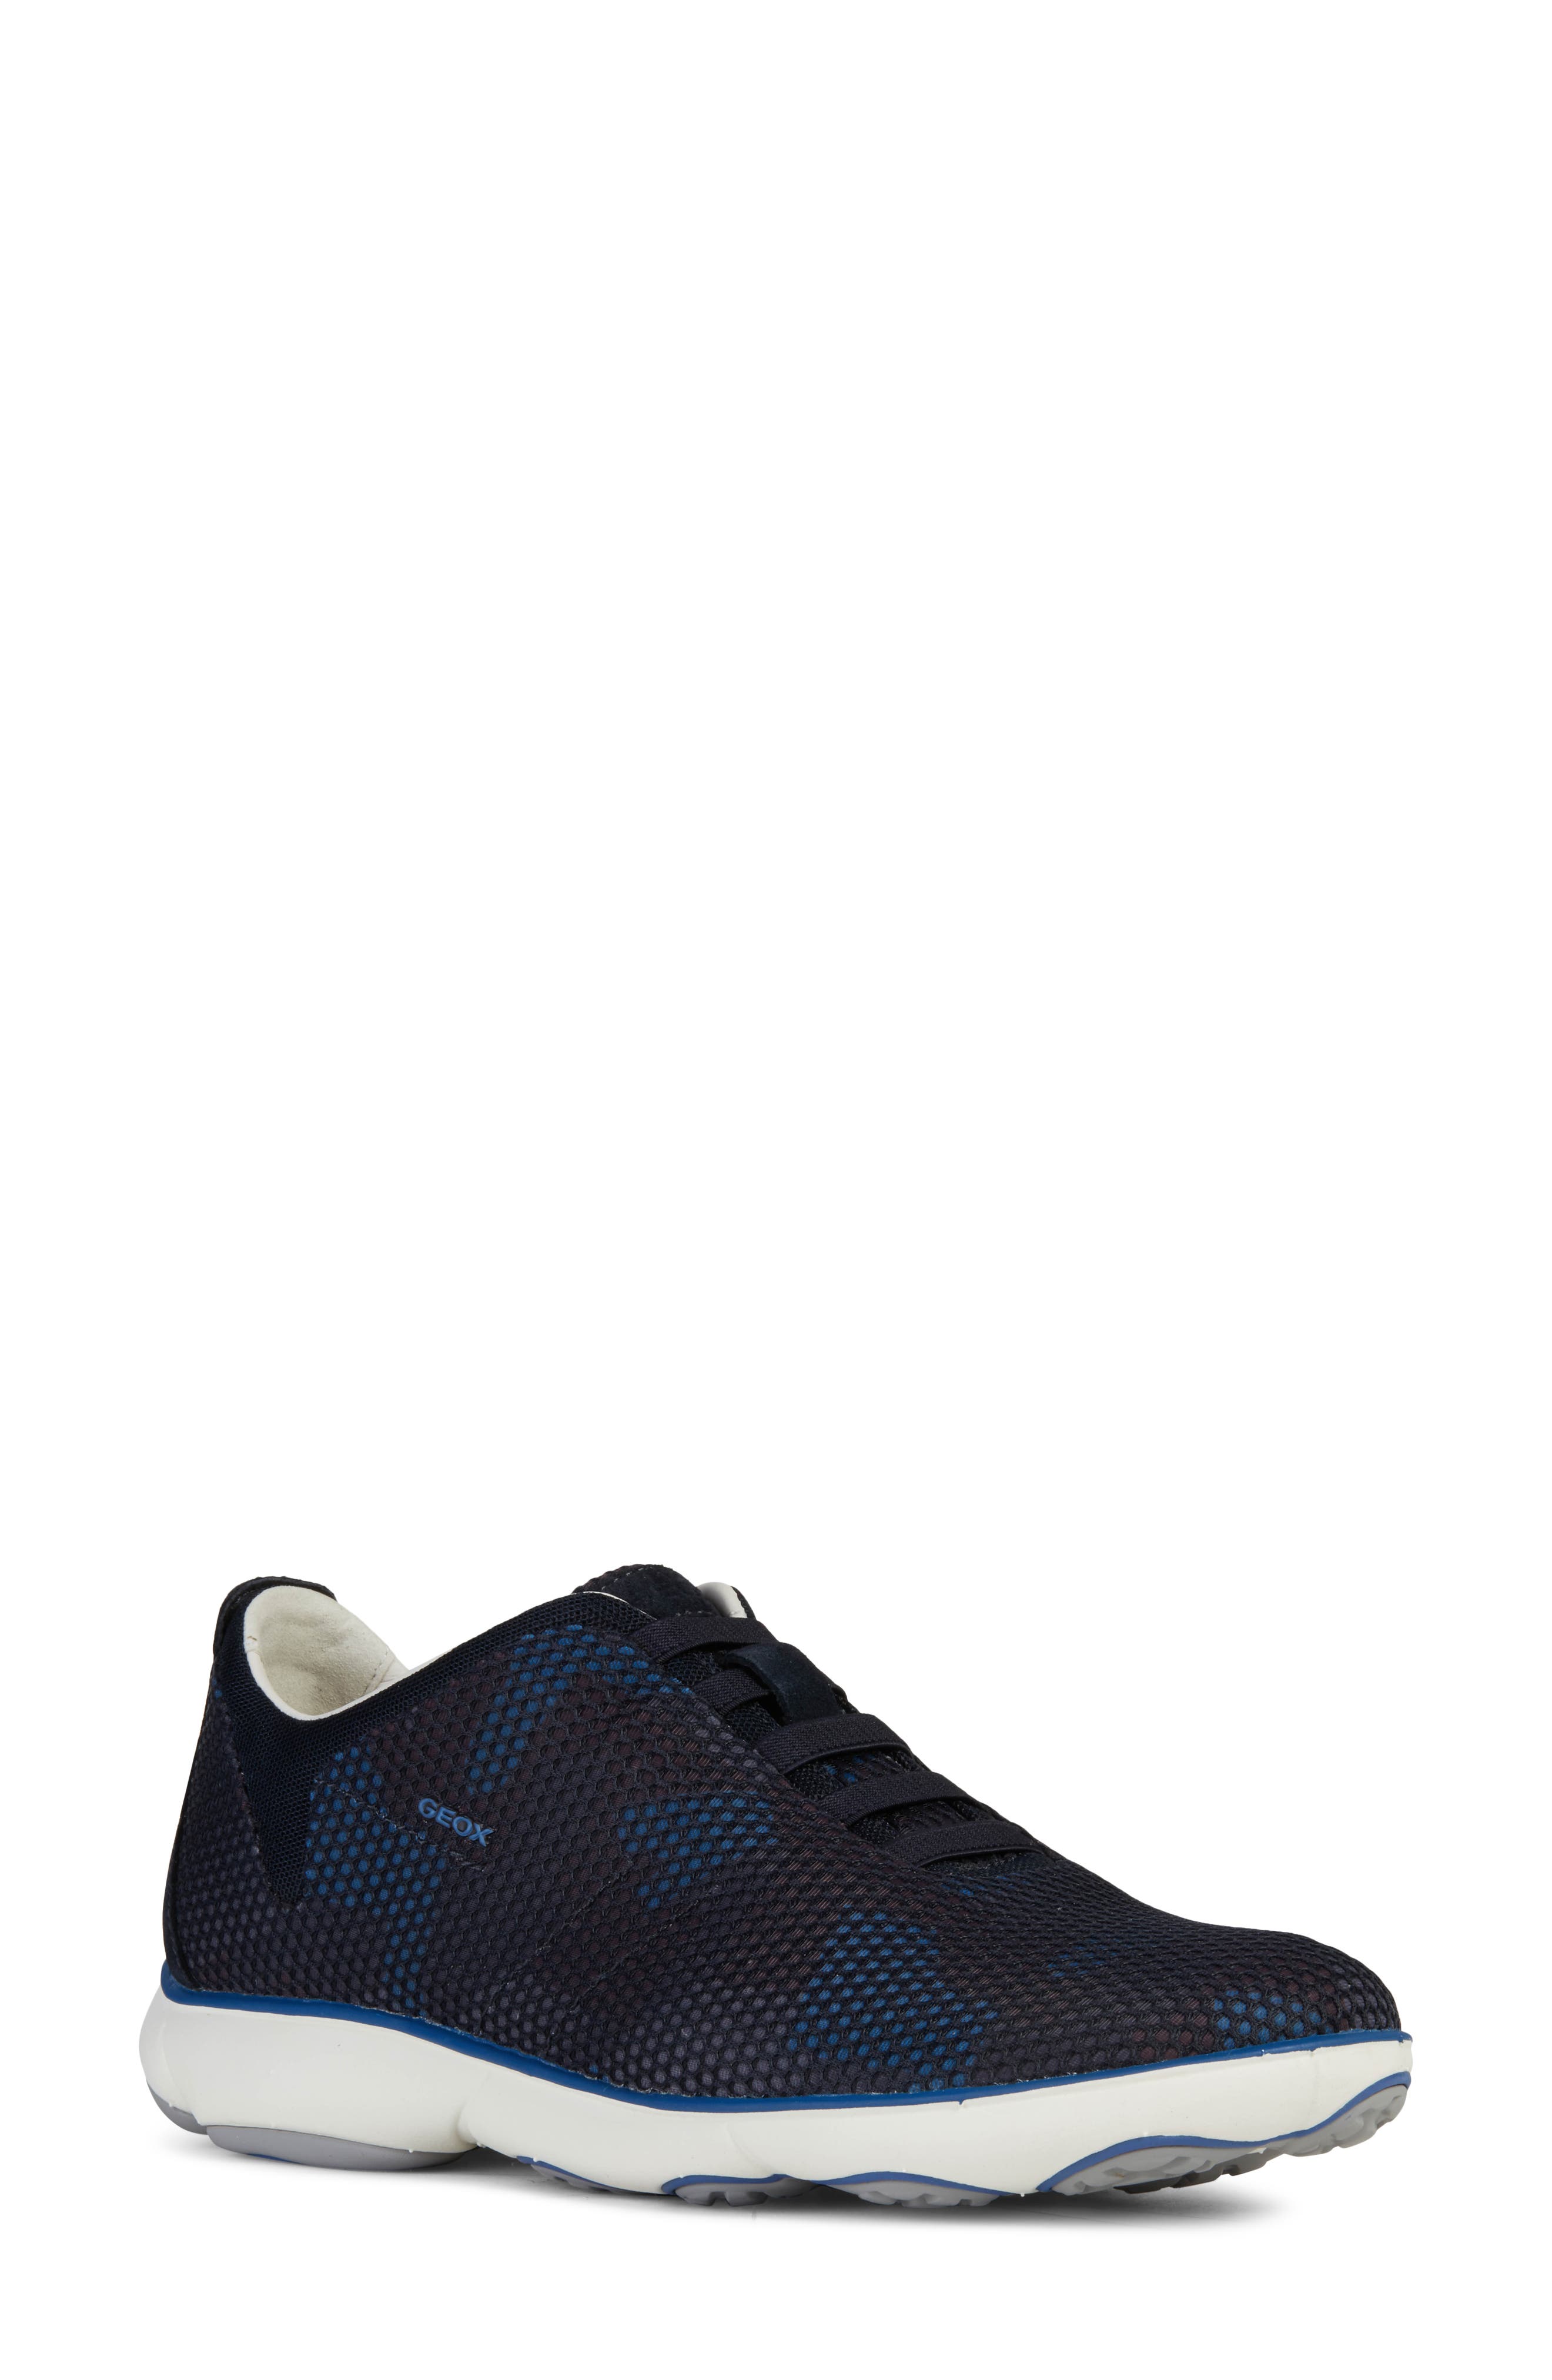 Men's Geox Shoes | Nordstrom